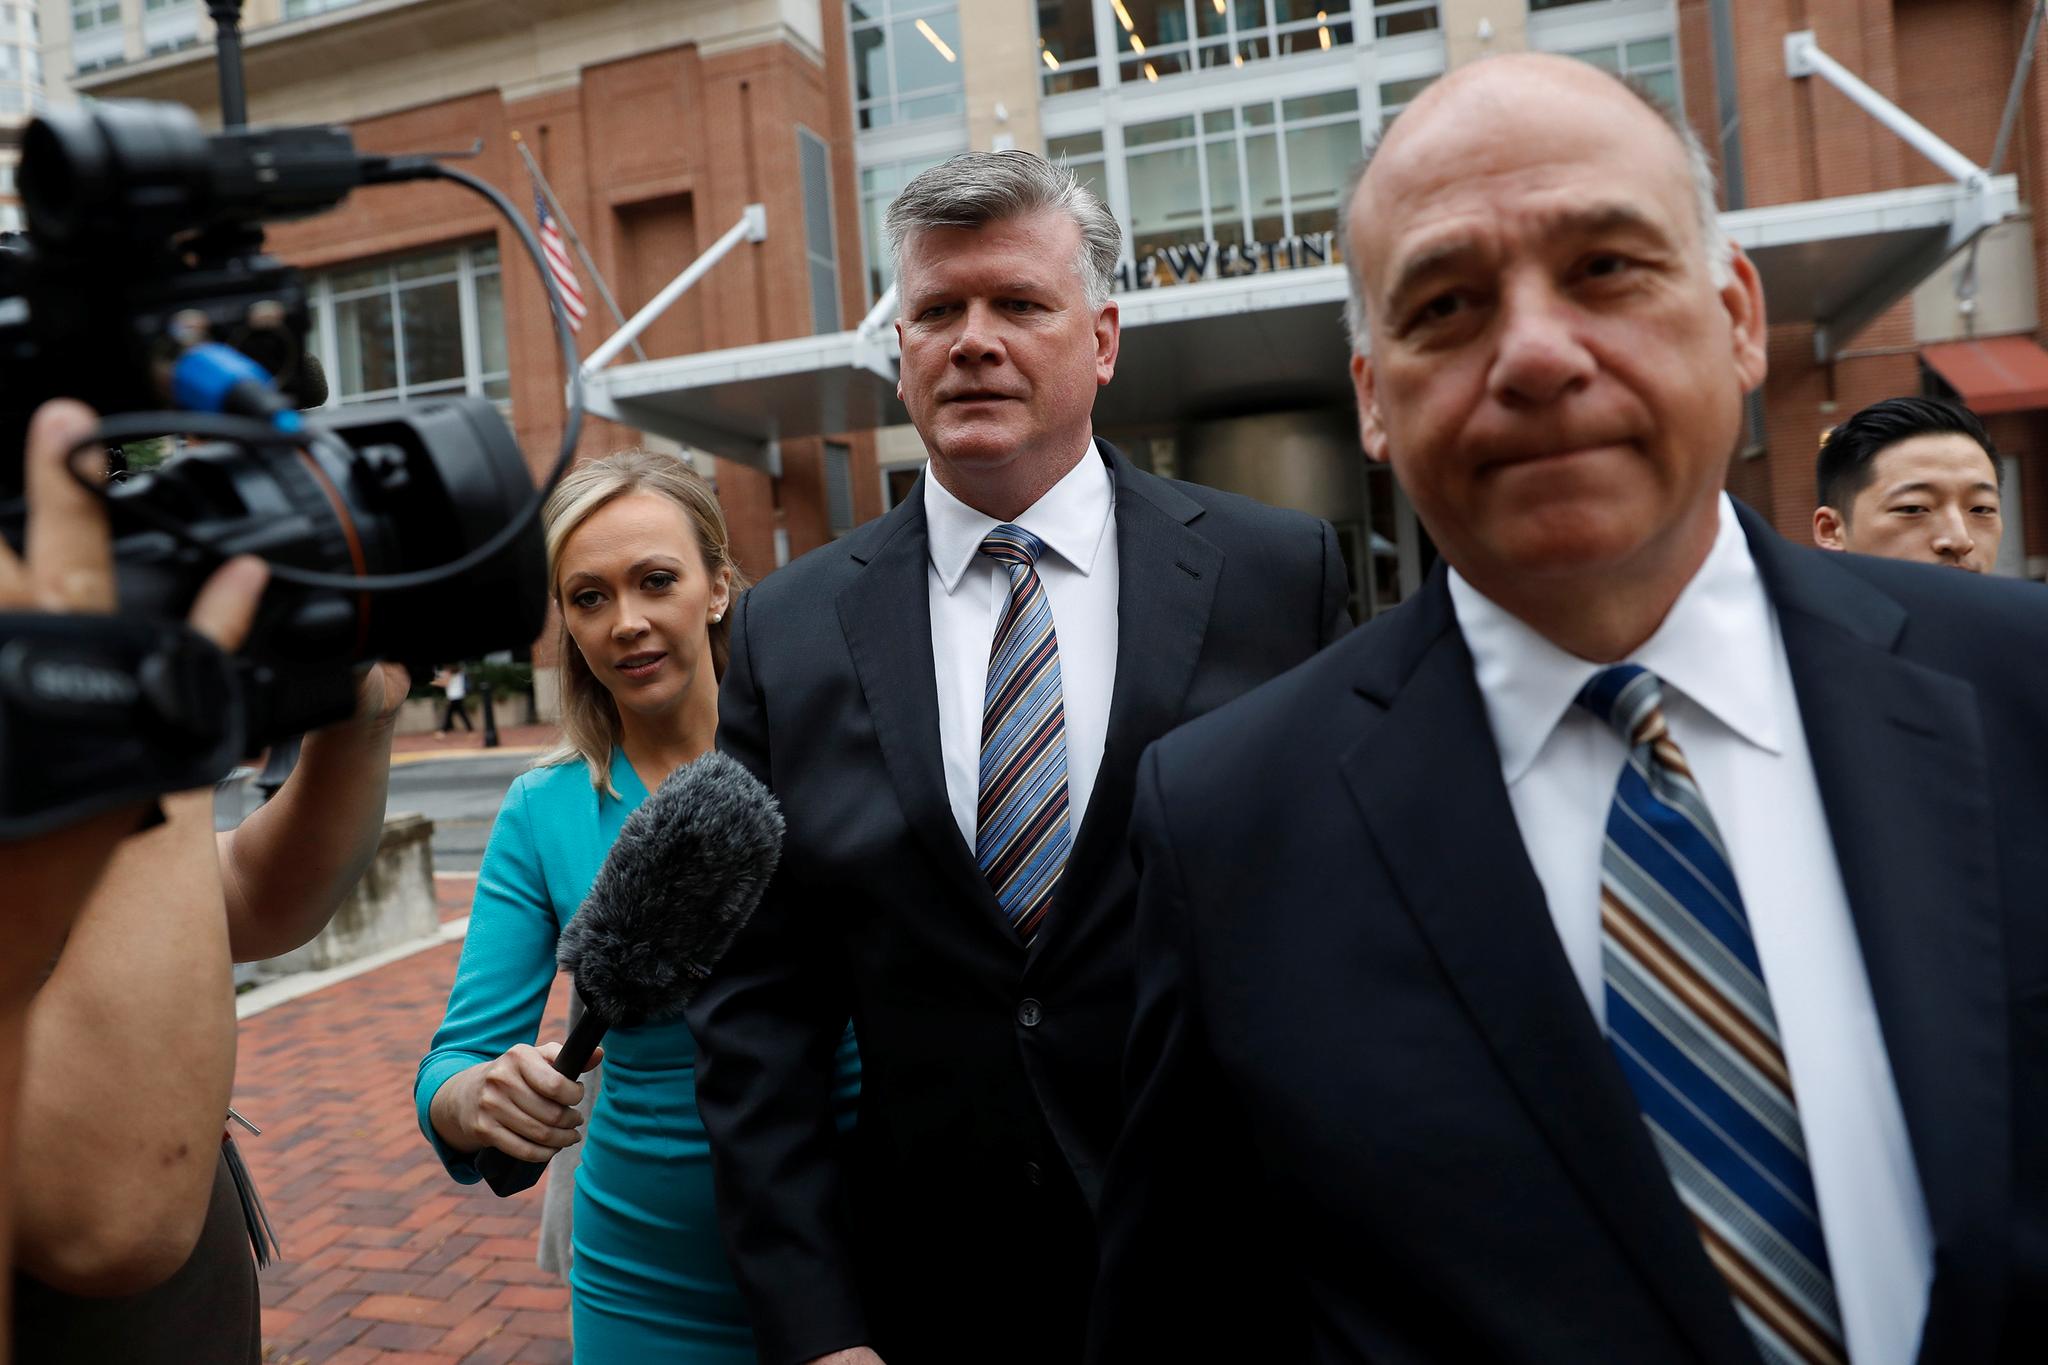 Paul Manaforts forsvarsadvokat Kevin Downing ankom rettslokale i Alexandria i nordlige Virginia for rettssakens første dag.